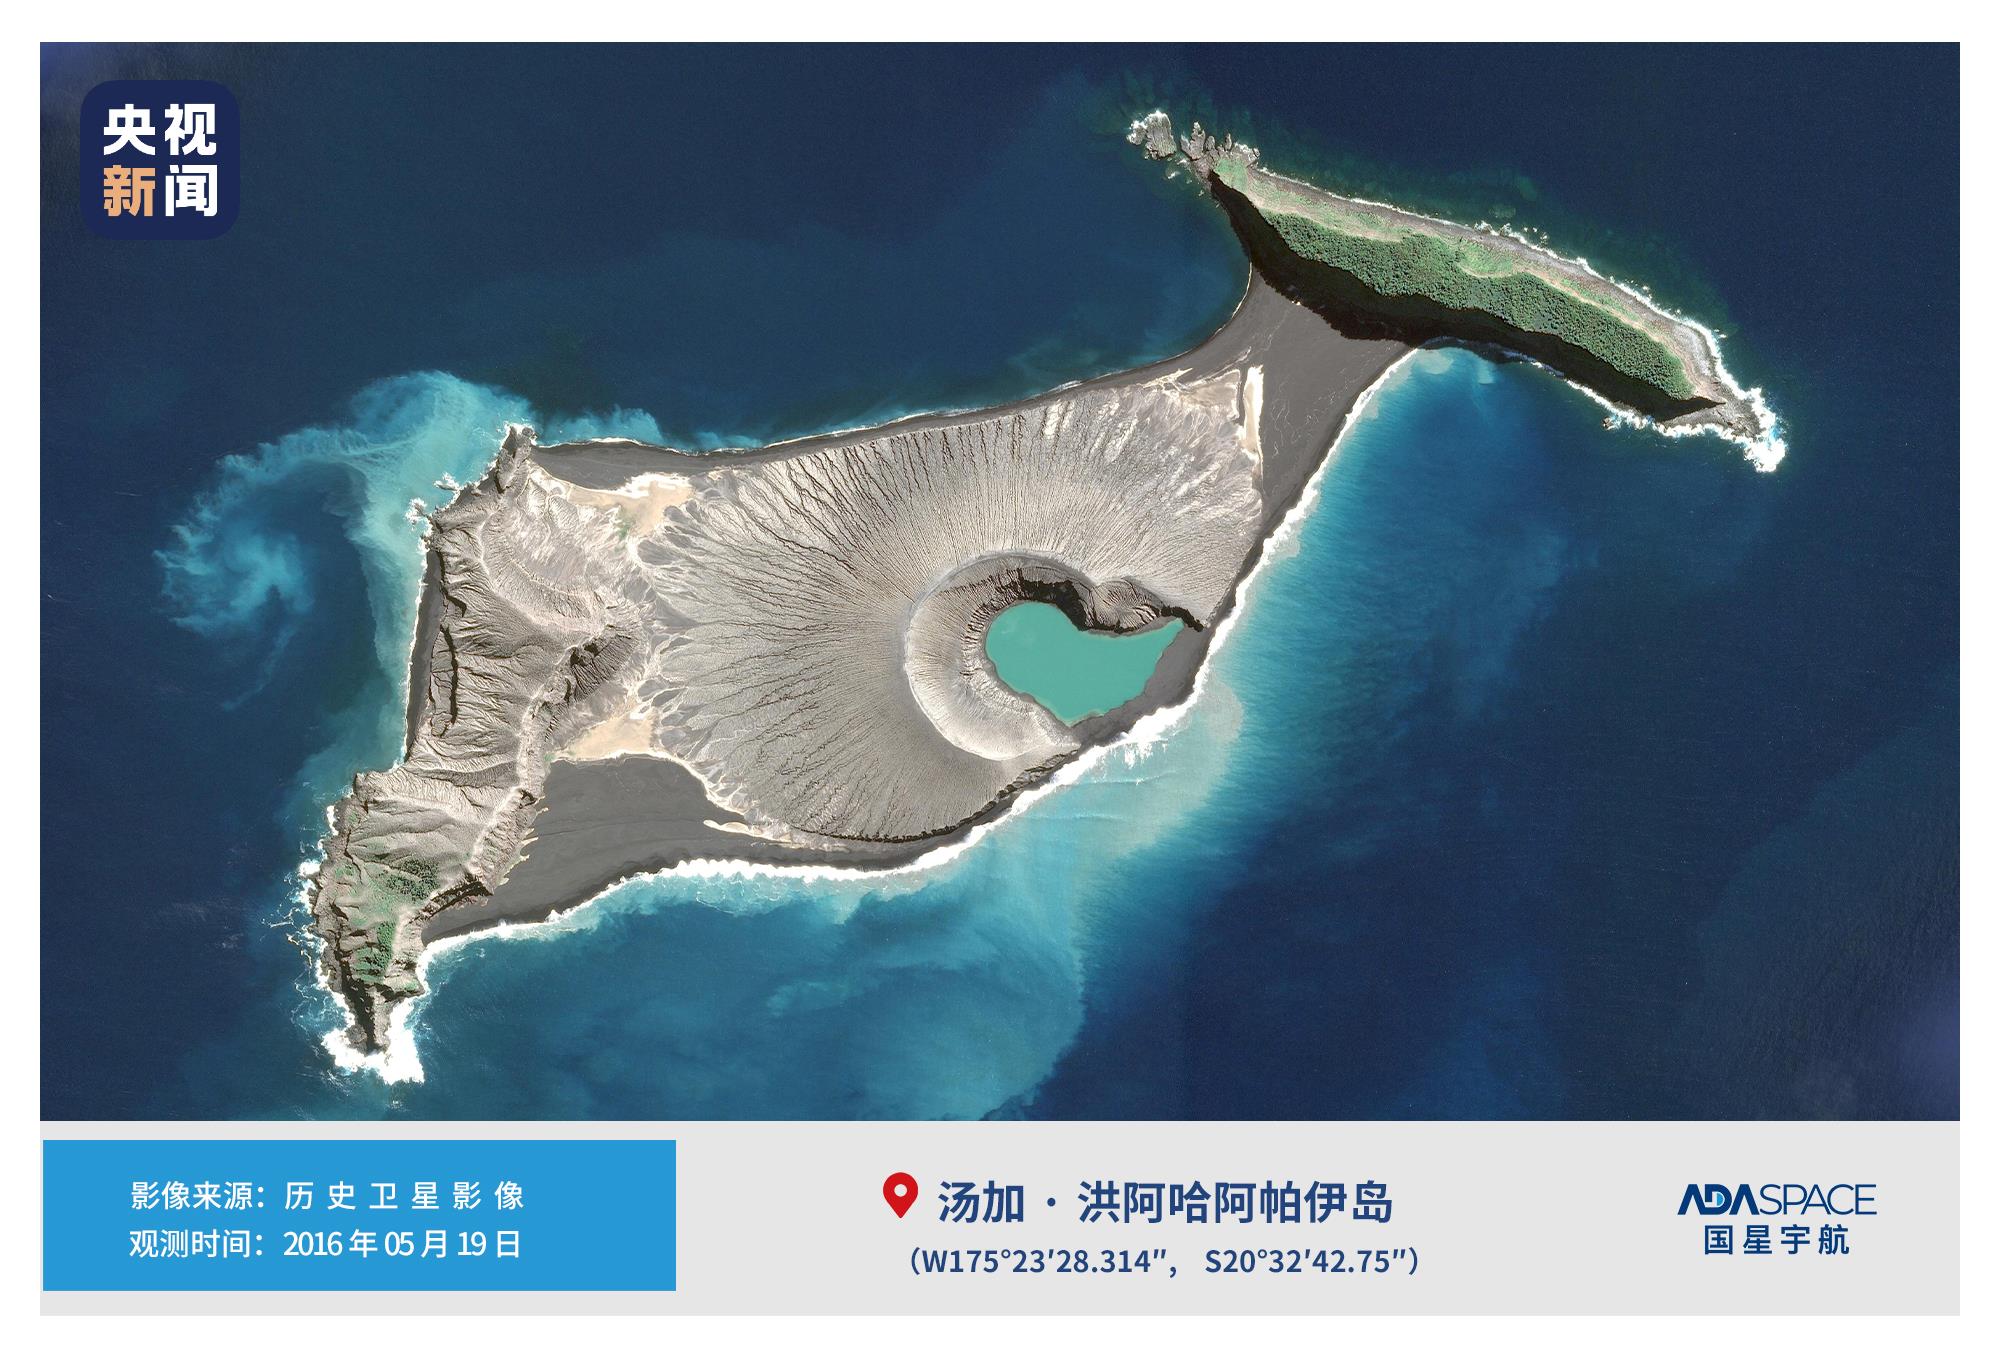 汤加火山地理位置地图图片